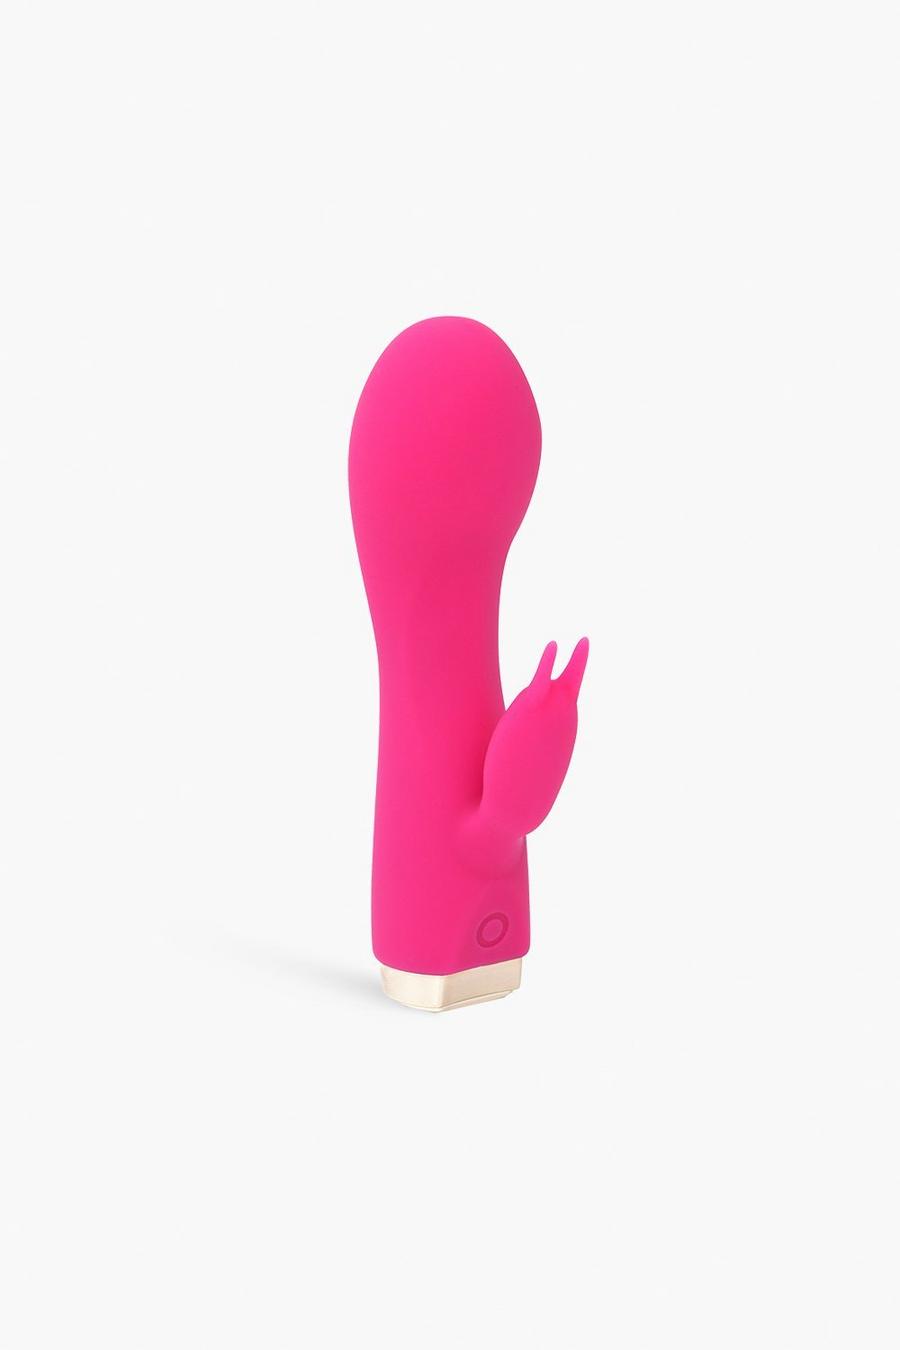 Skins - Mini vibromasseur - The Bijou Bunny, Pink rosa